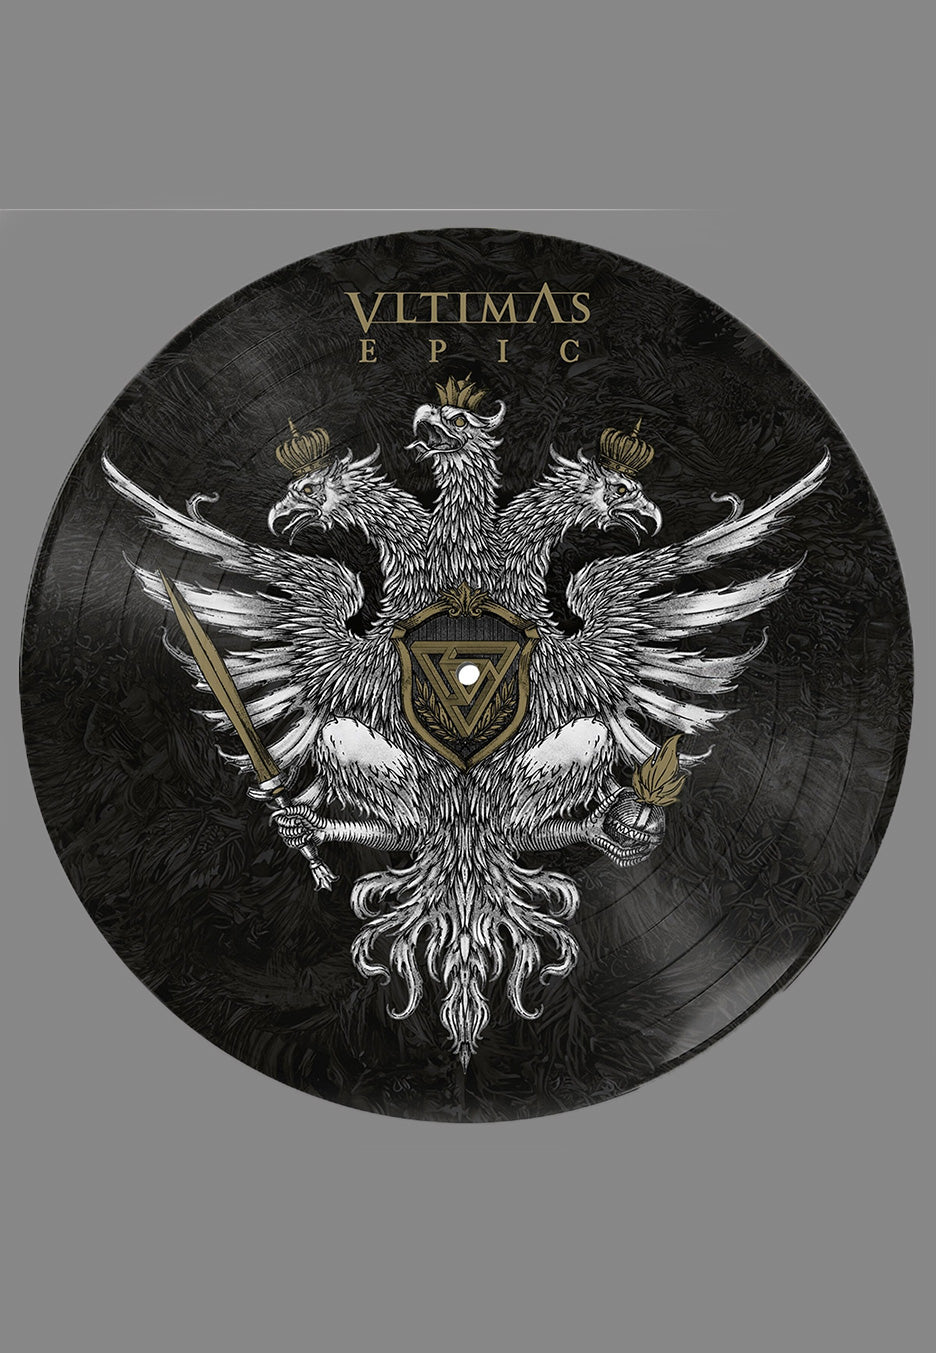 Vltimas - Epic Ltd. - Picture Vinyl